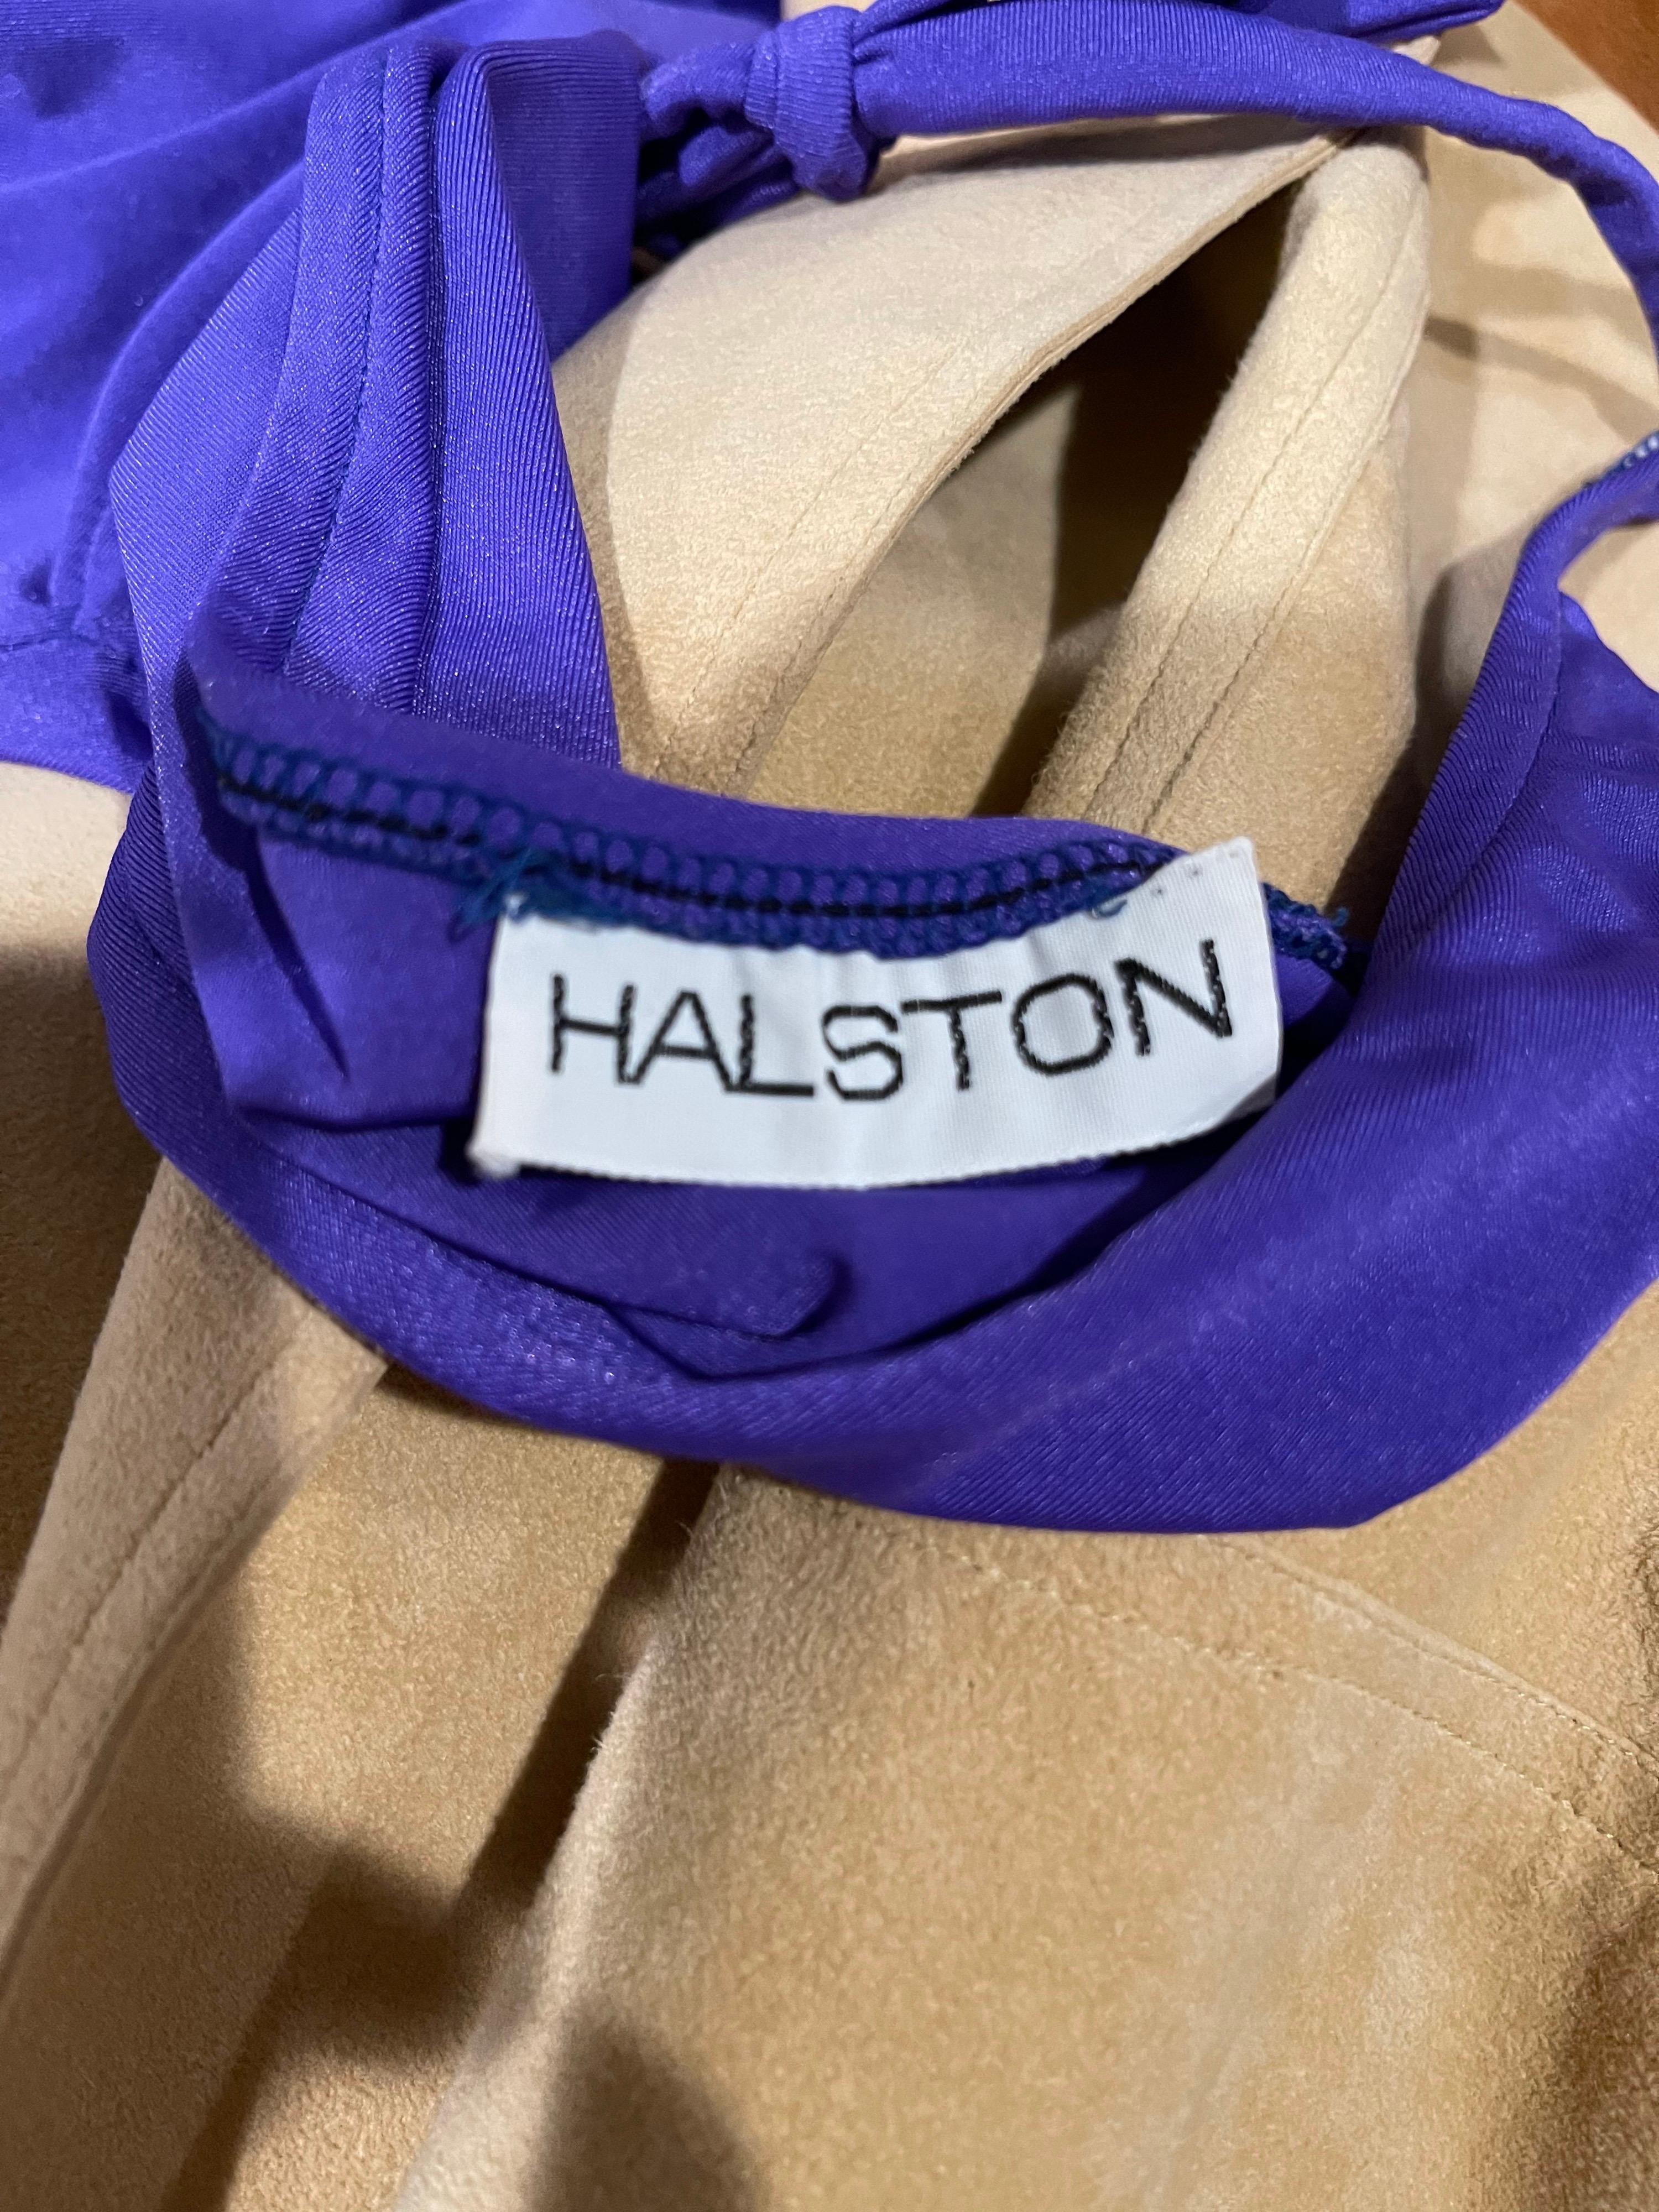 Seltene und sexy 1970er HALSTON lila ein Stück plunging Halfter Badeanzug ODER Bodysuit ! Schöner lila Juwelen-Ton Farbe. Diese seltene Schönheit ist einer von 6 Halston-Badeanzügen, die ich kürzlich von einem originalen Halstonette-Modell erworben